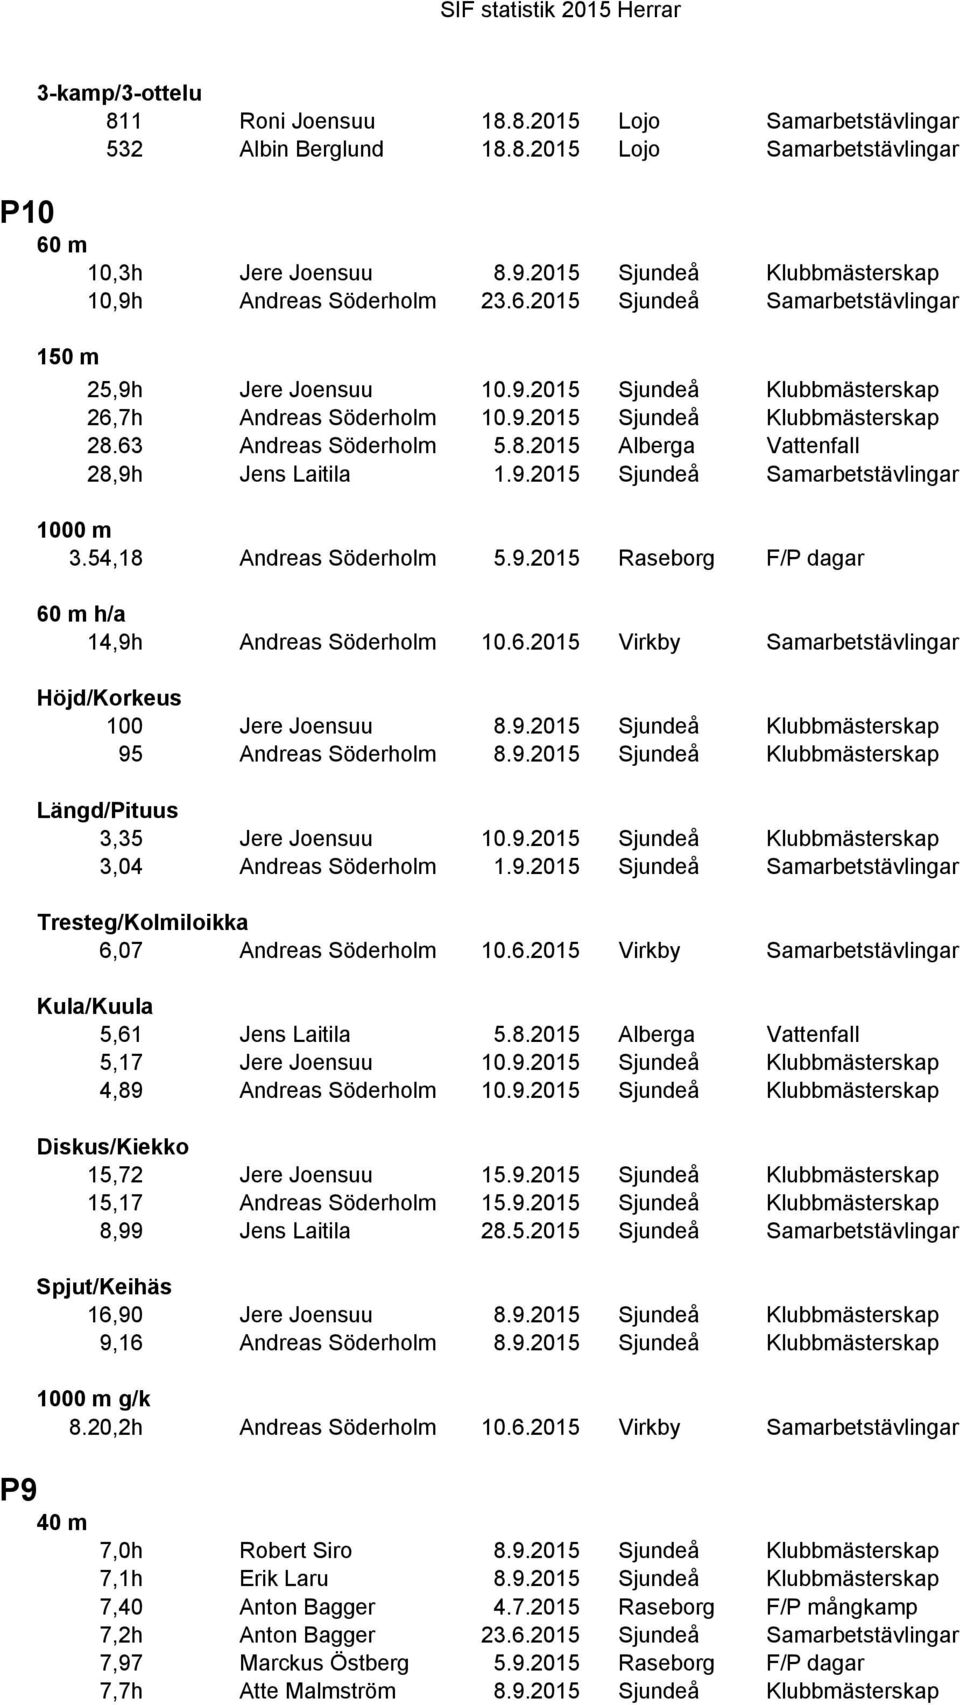 63 Andreas Söderholm 5.8.2015 Alberga Vattenfall 28,9h Jens Laitila 1.9.2015 Sjundeå Samarbetstävlingar 1000 m 3.54,18 Andreas Söderholm 5.9.2015 Raseborg F/P dagar 60 m h/a 14,9h Andreas Söderholm 10.